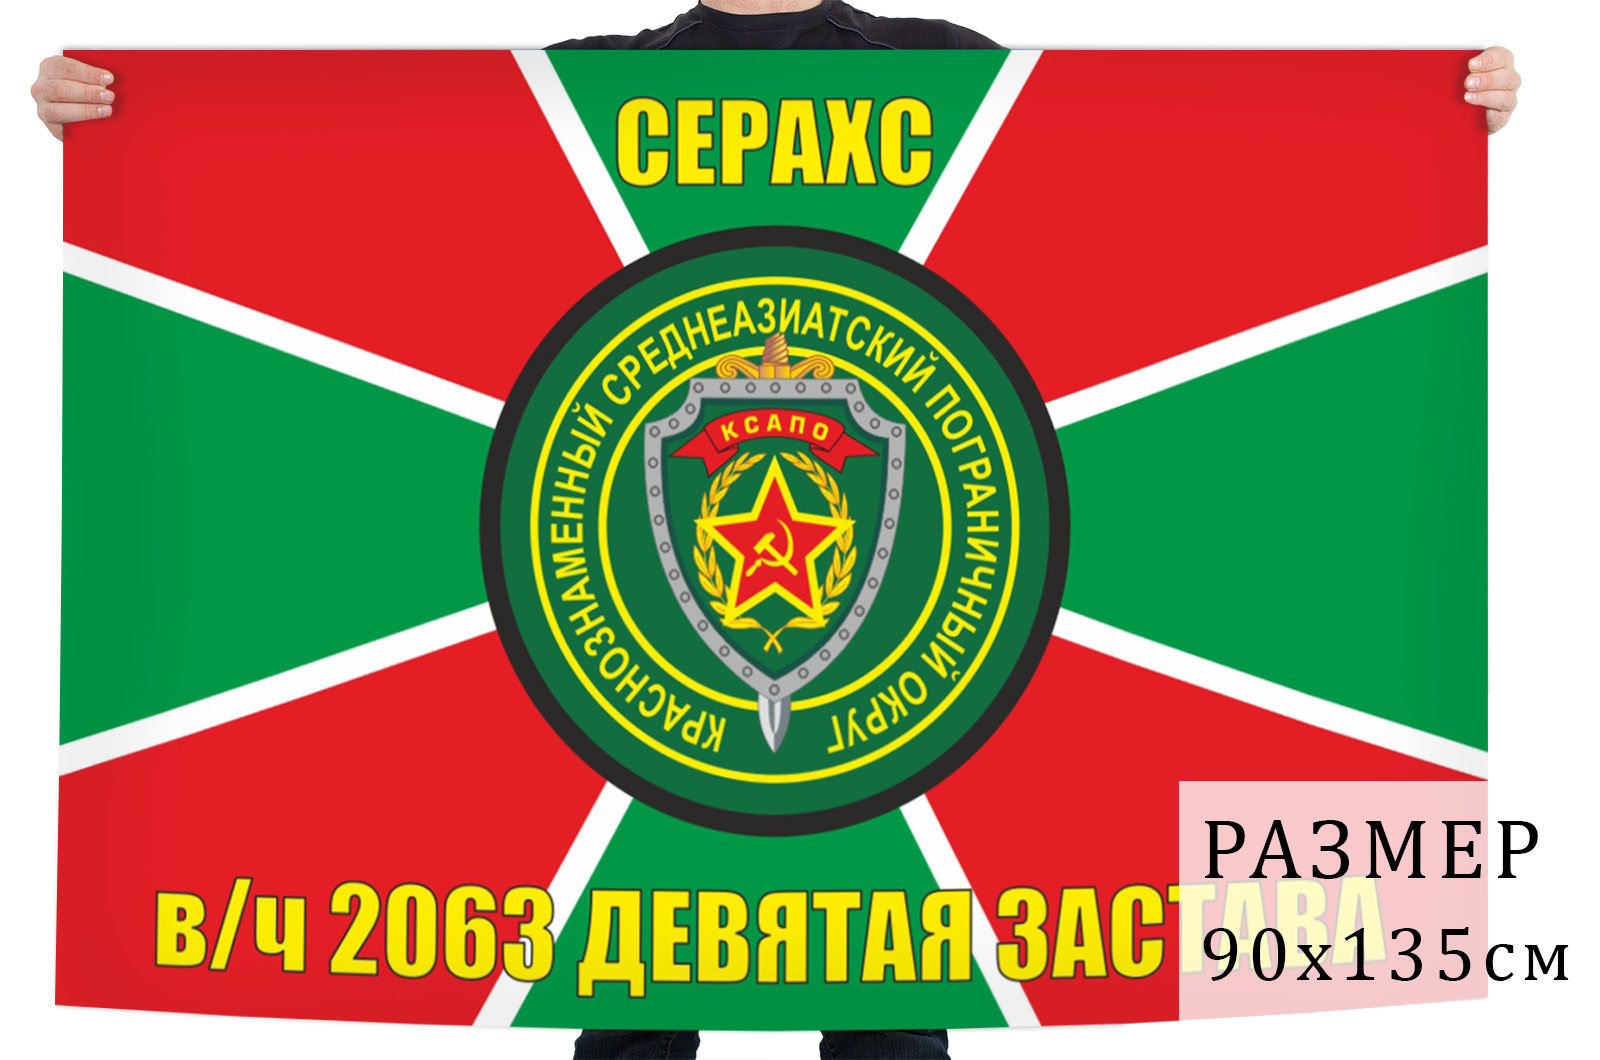 Двухсторонний флаг Девятой заставы Серахс, КСАПО в/ч 2063 